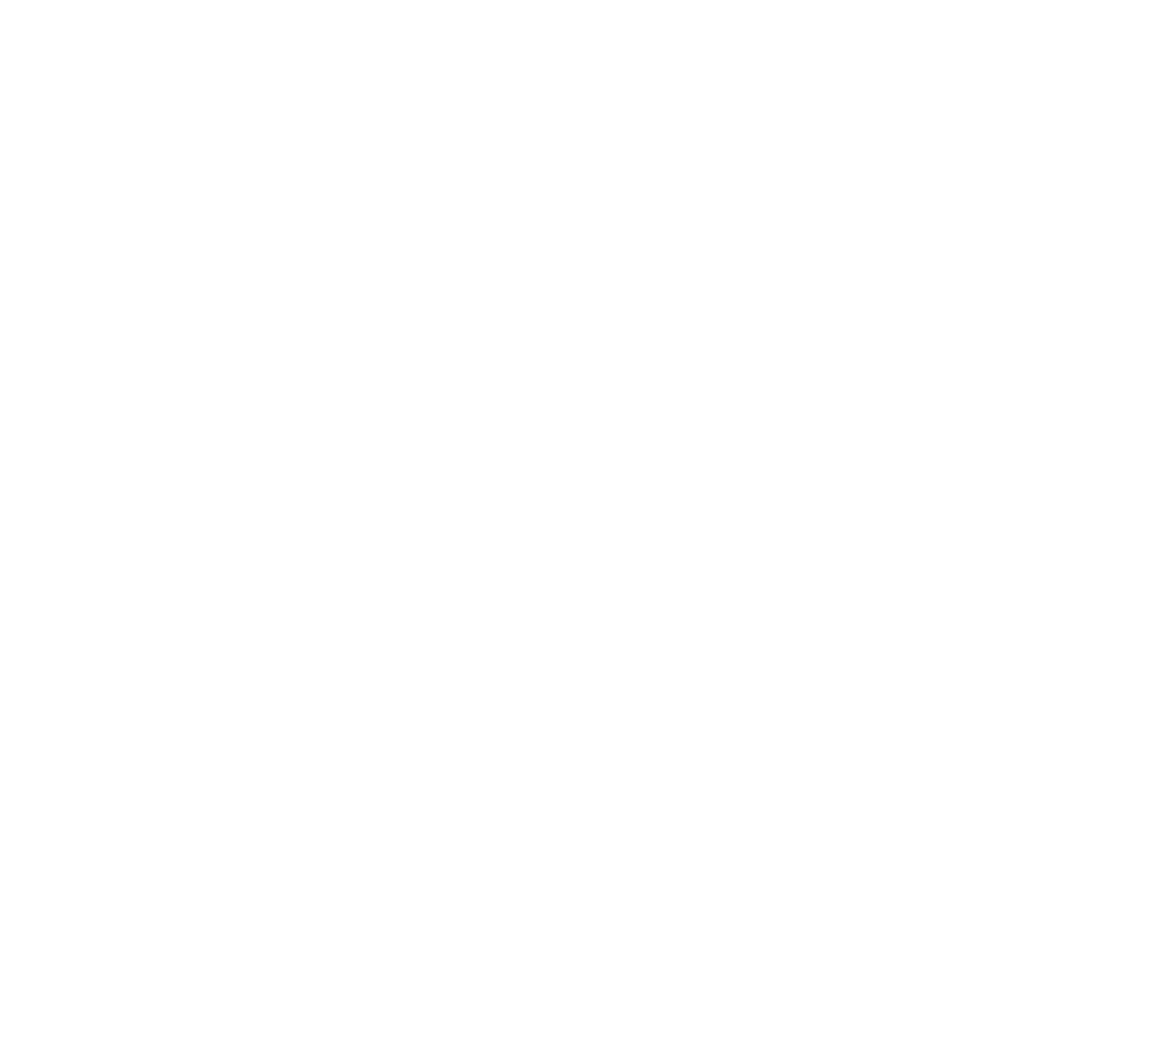 Teatro del Cigno